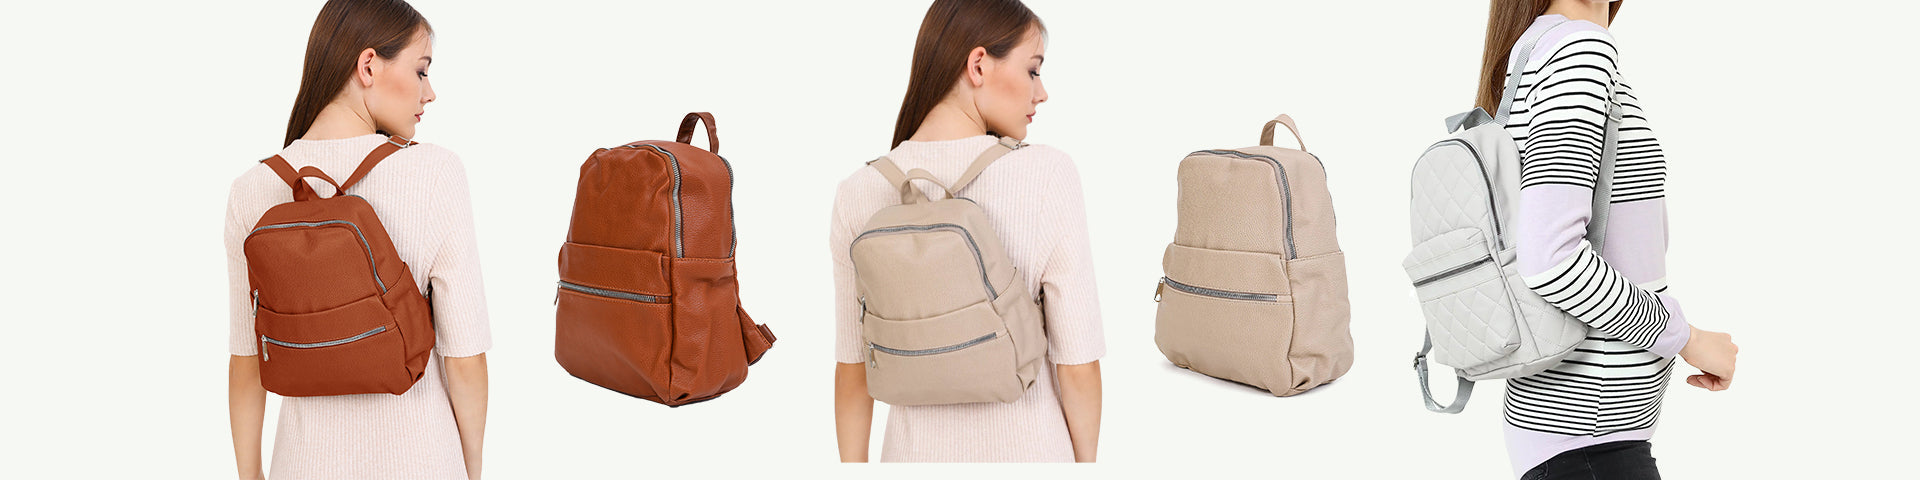 backpacks for women